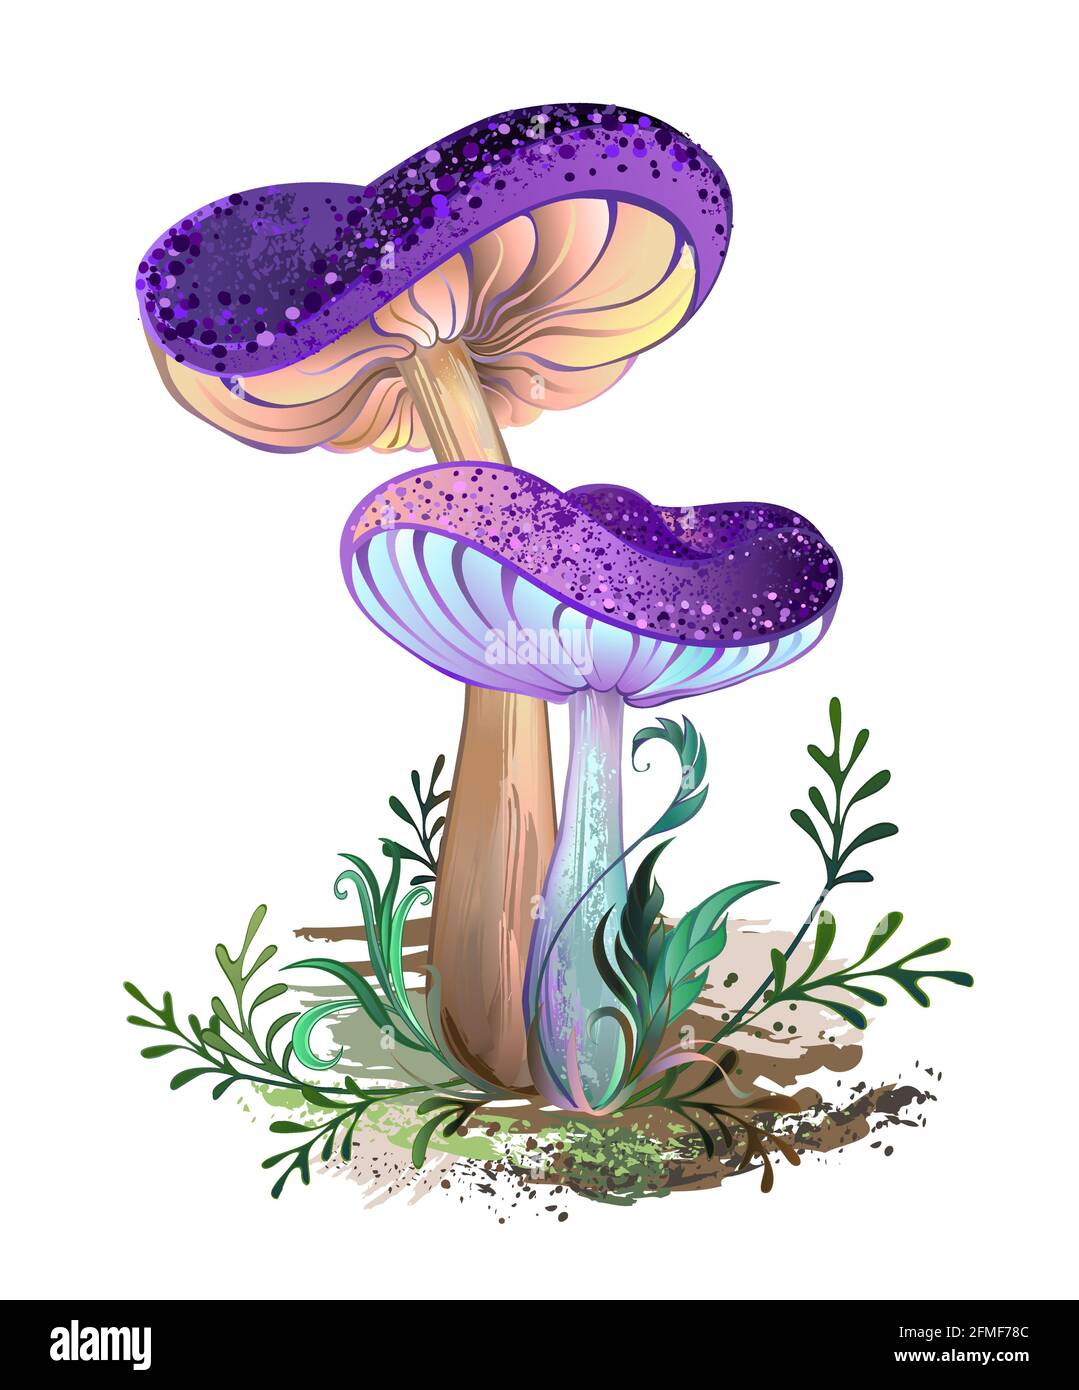 Due funghi tirati artisticamente, realistici e maturi con tappi a trama viola con muschio verde su sfondo bianco. Funghi favolosi. Illustrazione Vettoriale